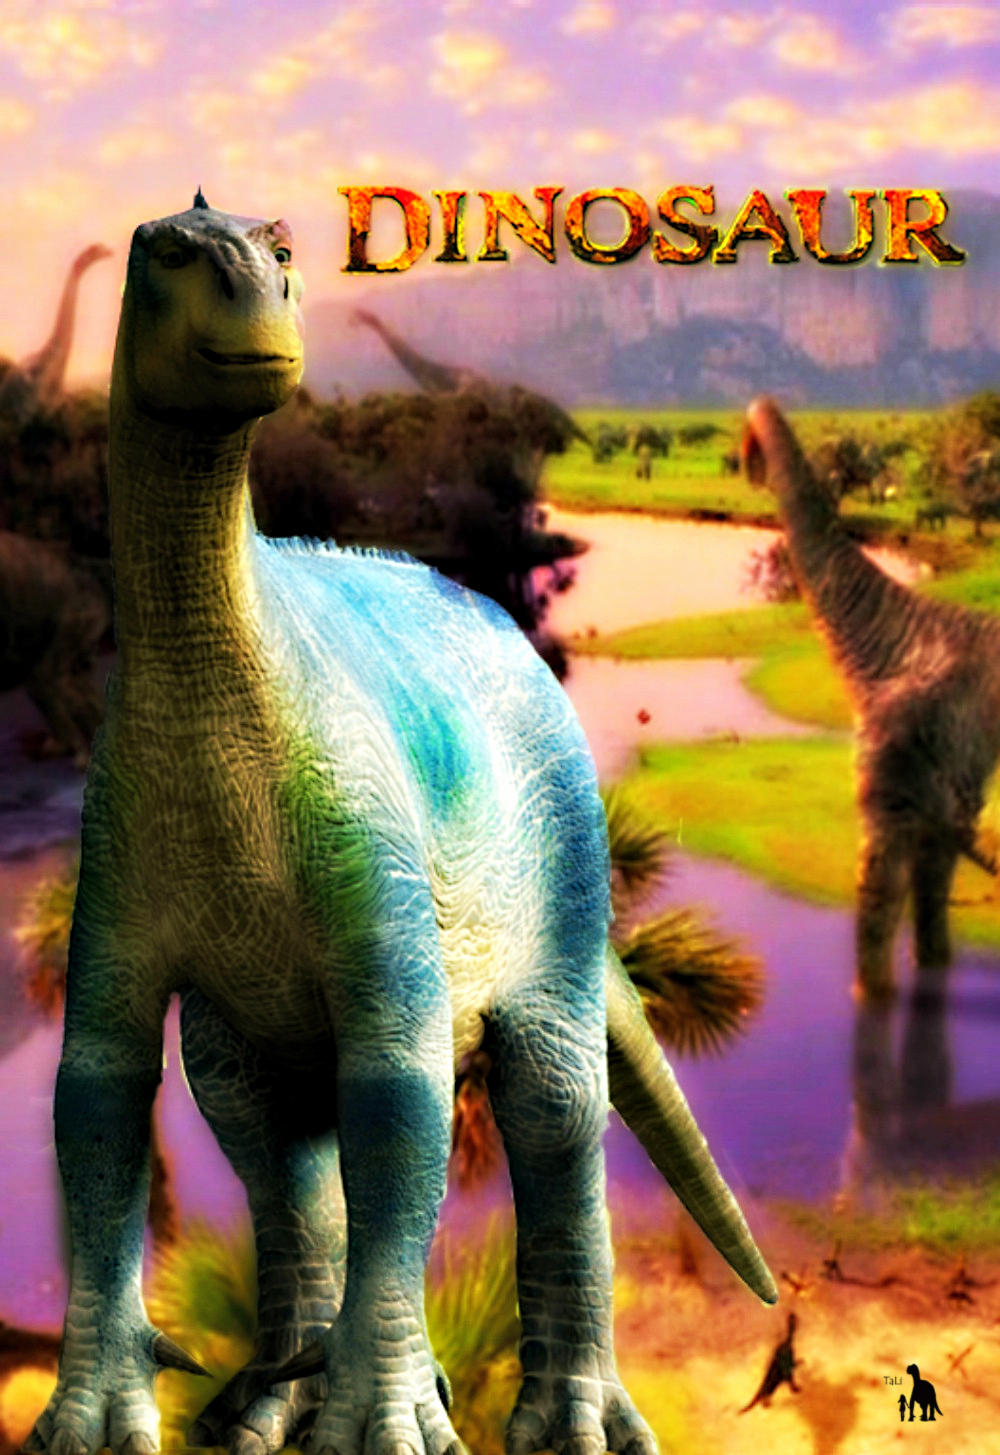  Disney  s Dinosaur  by Spiral87 on DeviantArt